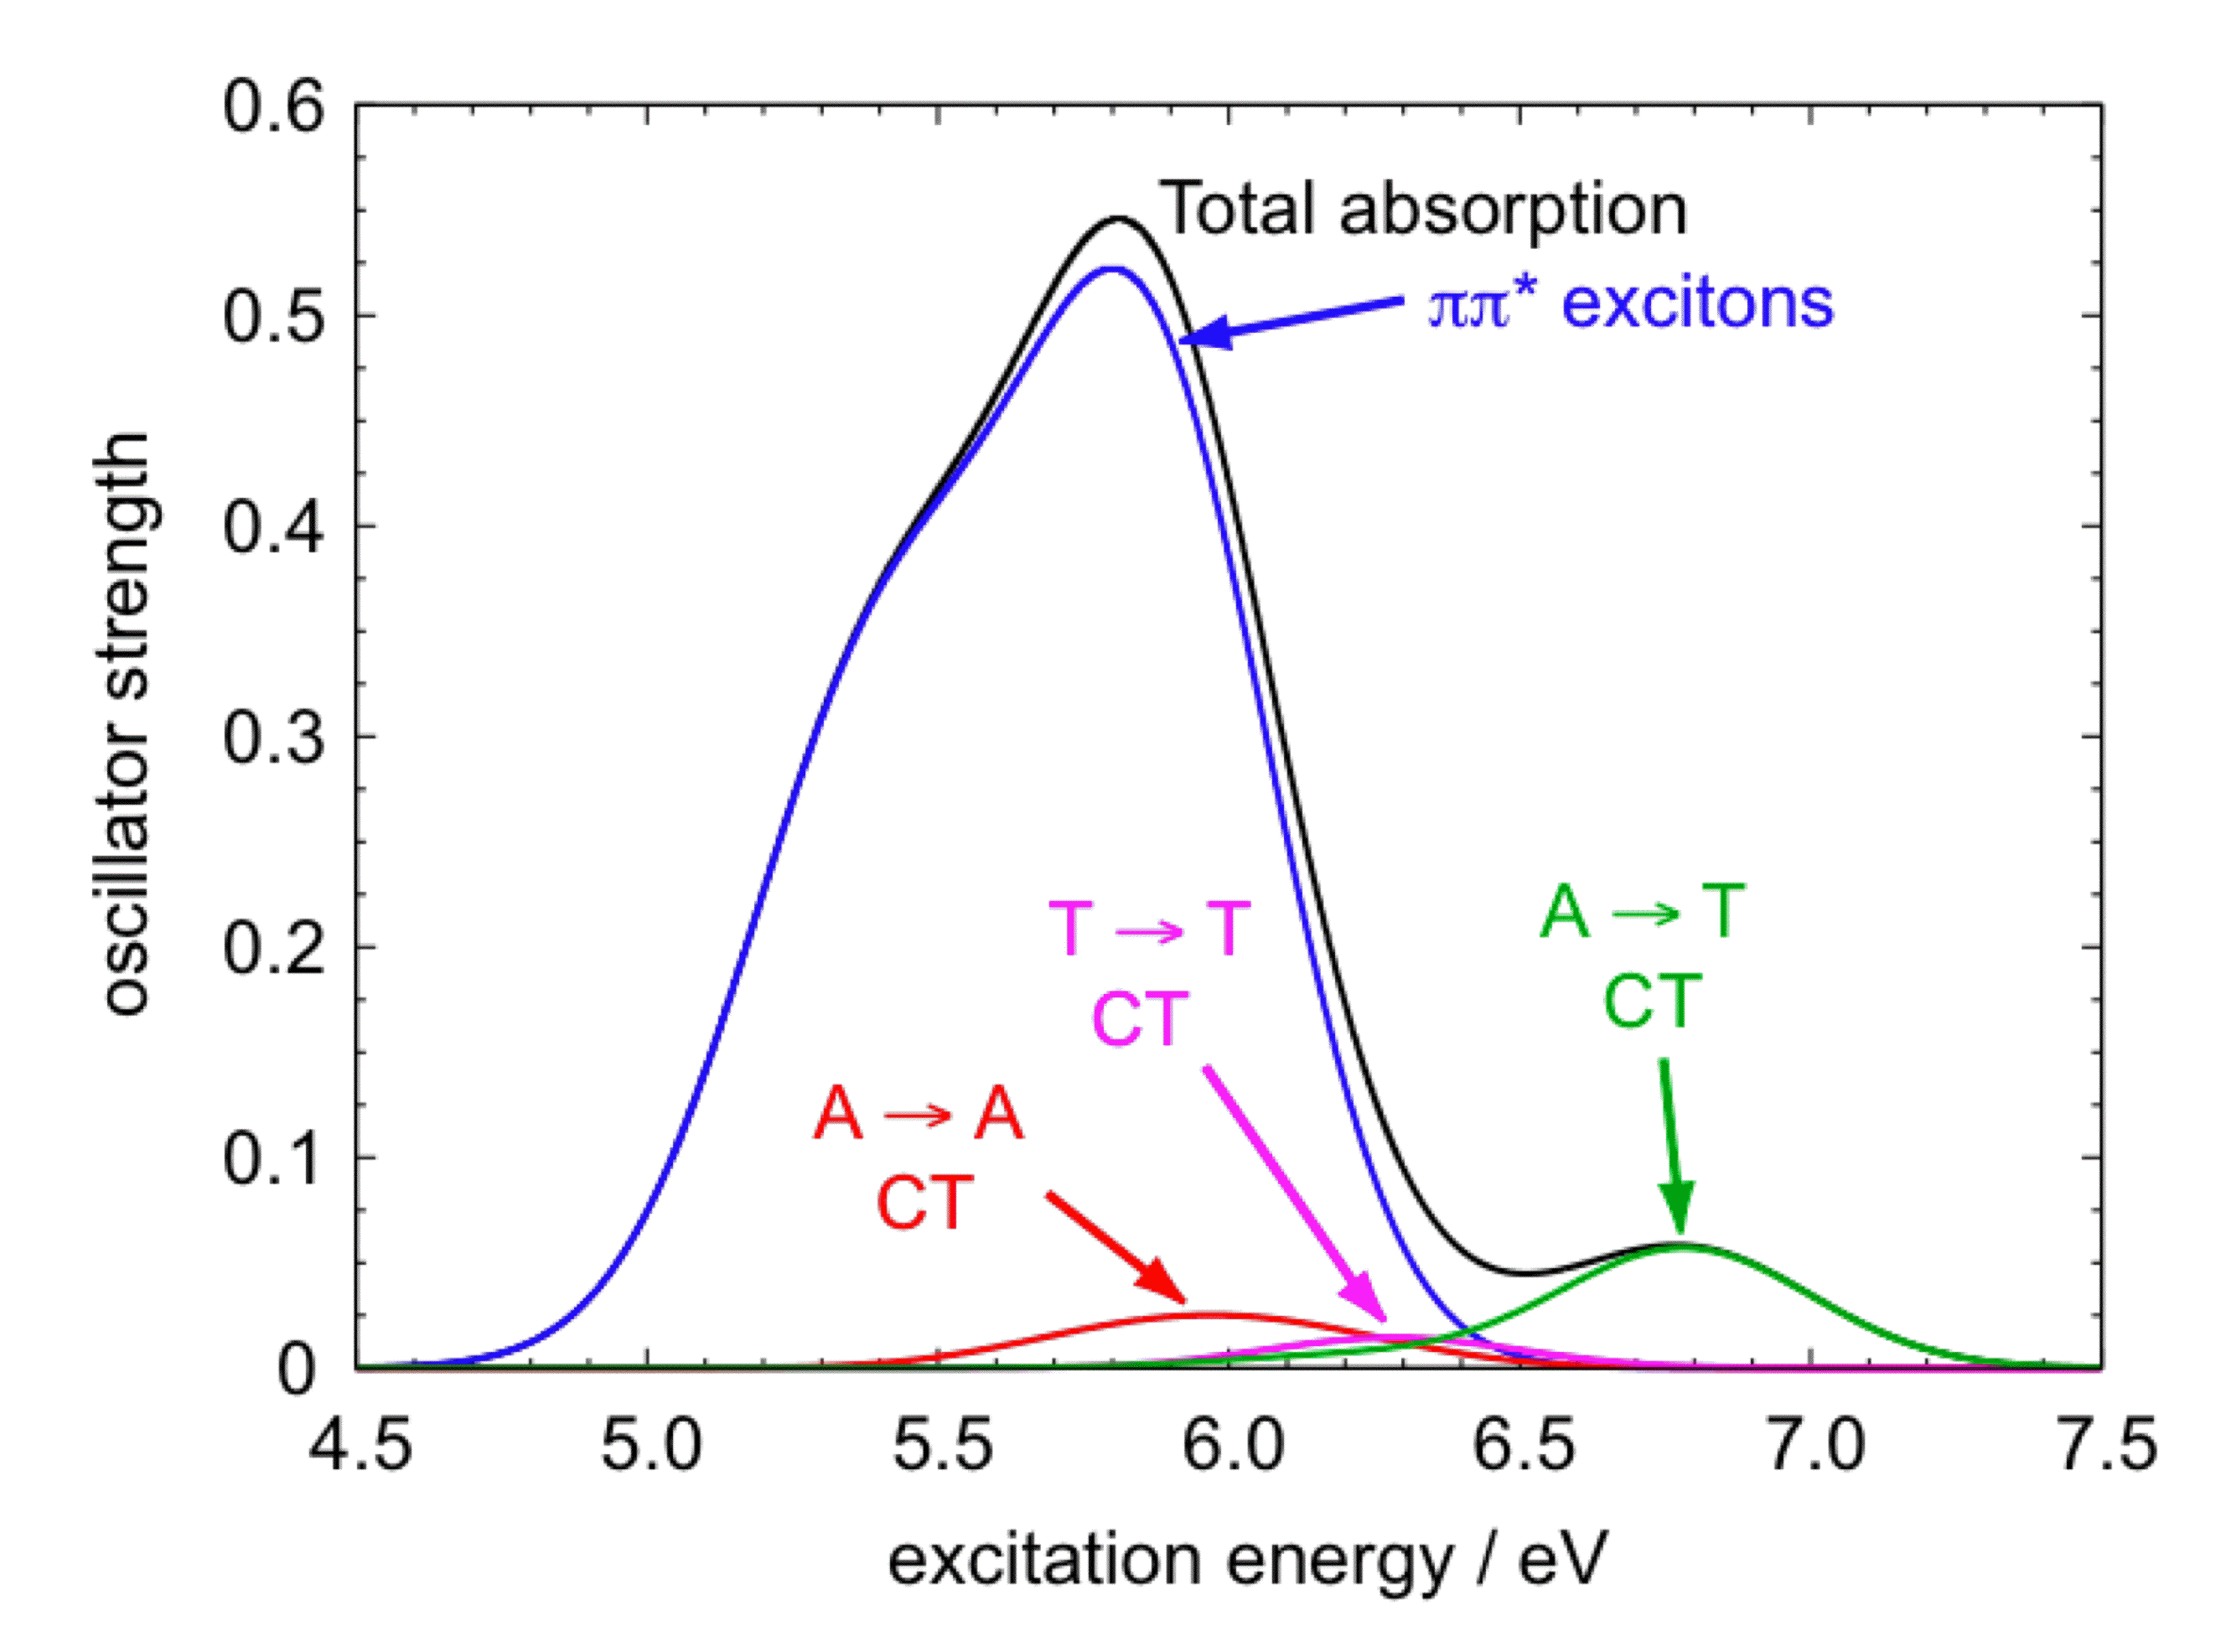 adenine dimer absorption spectrum